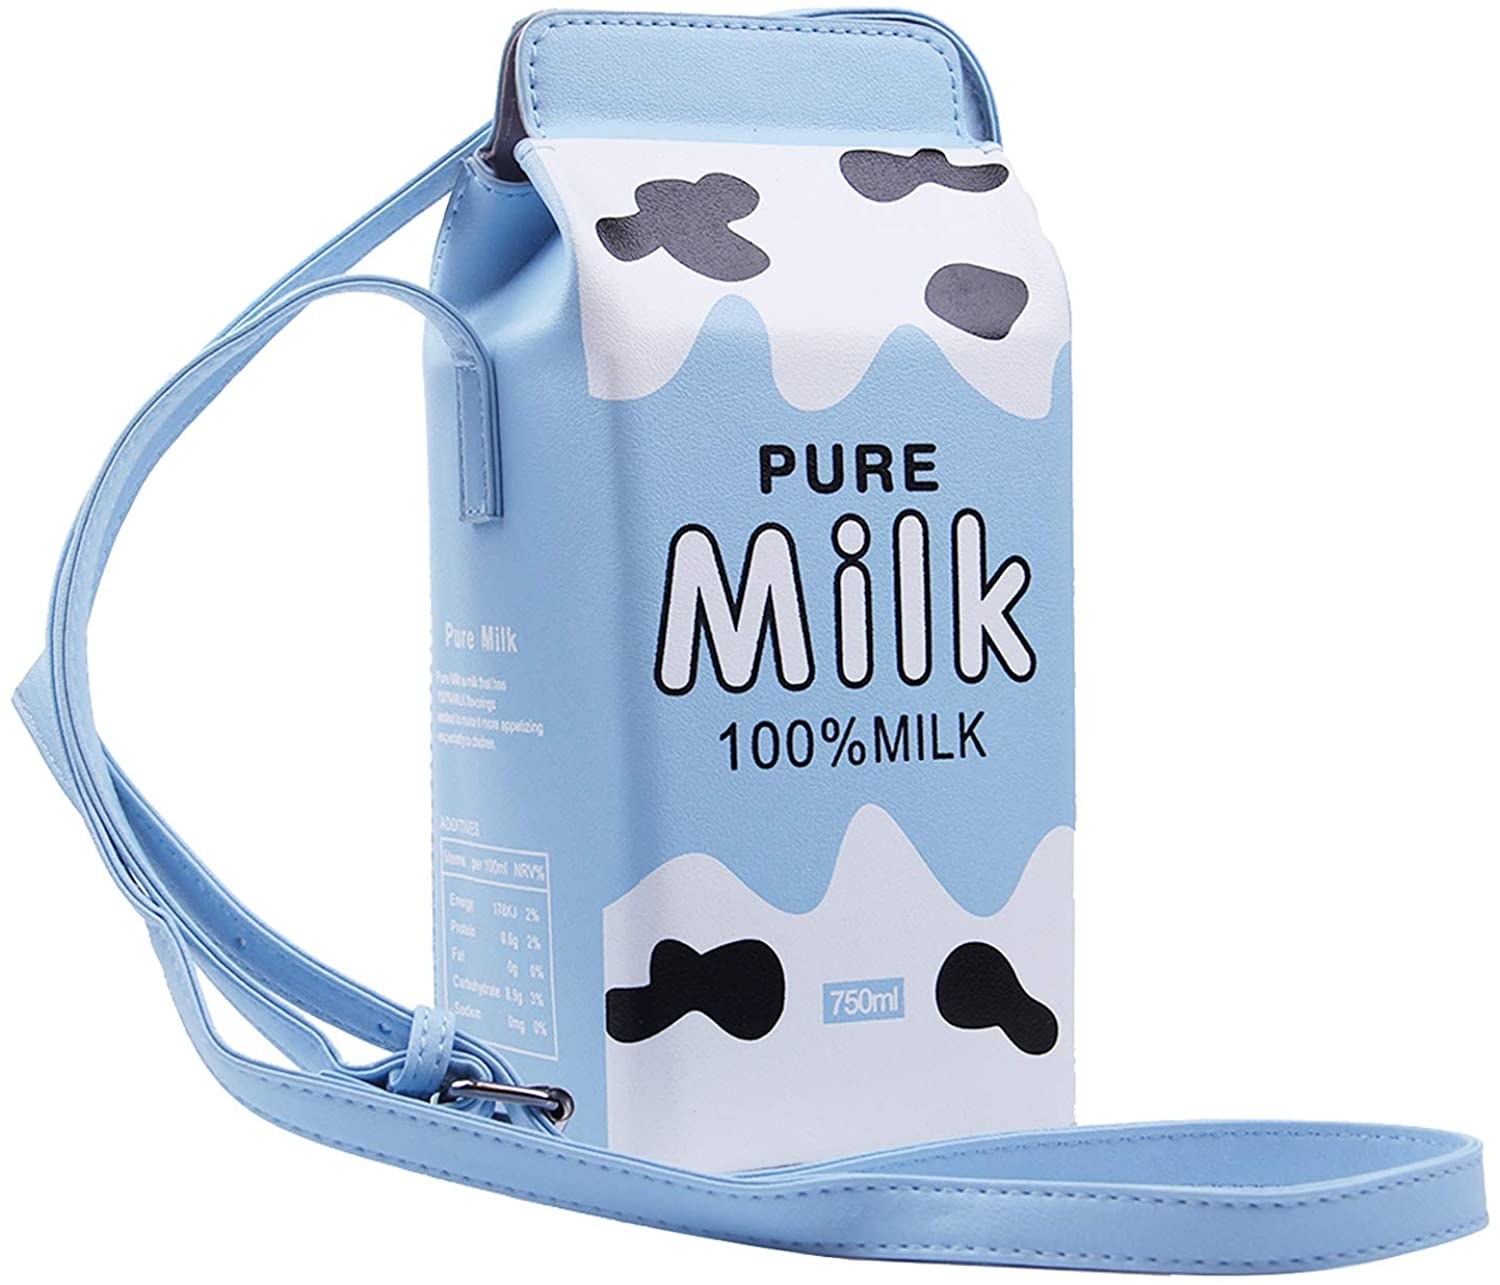 the blue lui sui milk carton bag